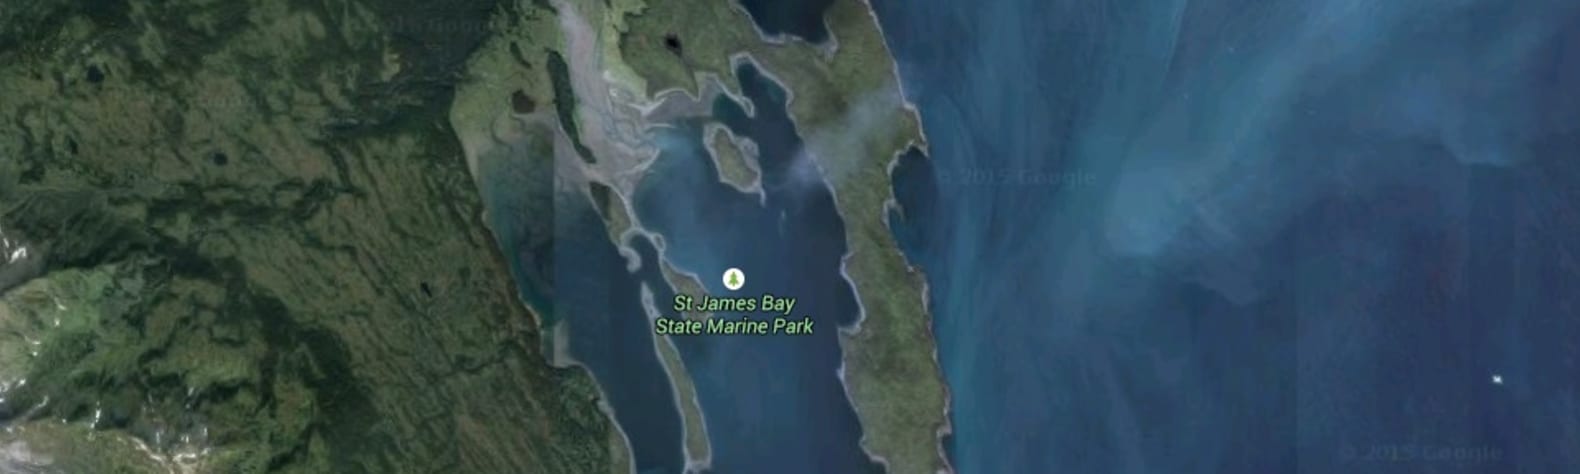 Saint James Bay State Marine Park